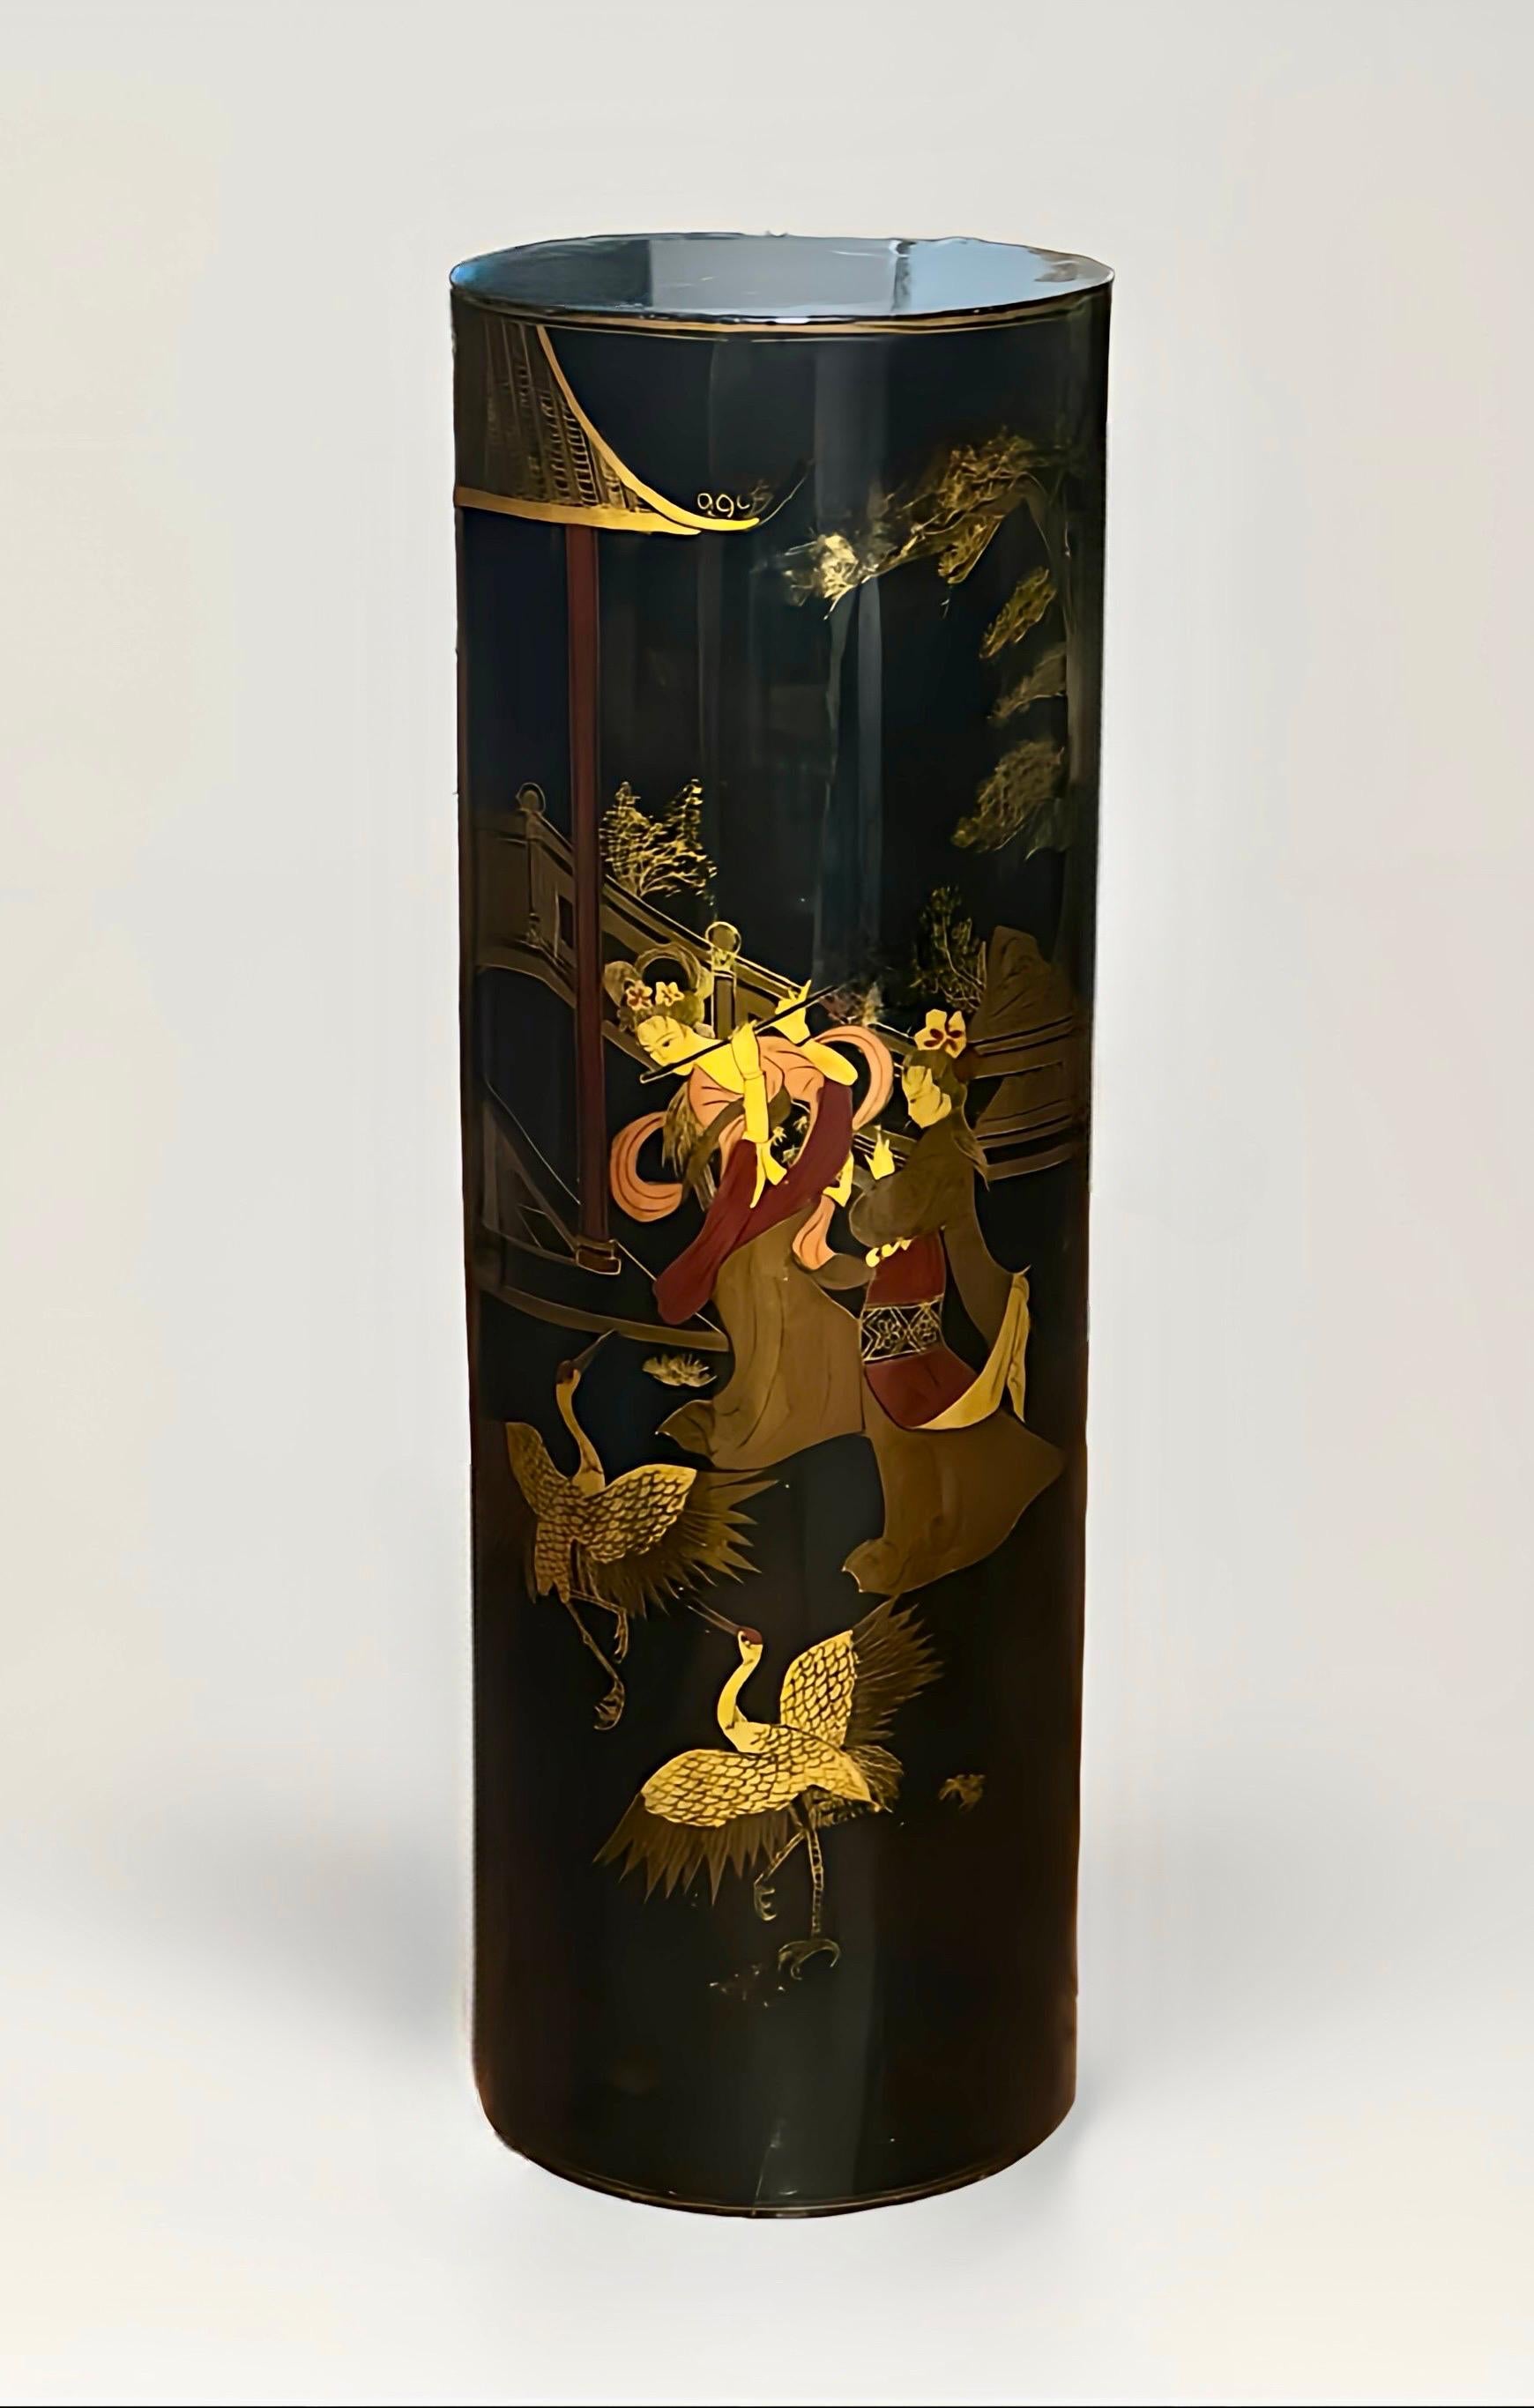 Chinesischer, schwarz lackierter, zylindrischer Holzsockel, 1960er Jahre.

Exquisiter Sockel mit einer Szene, die elegante Damen in einem Gartenpavillon mit Vögeln, Architektur und Bäumen zeigt. Ein malerisches Werk mit schönen Farben vor dem